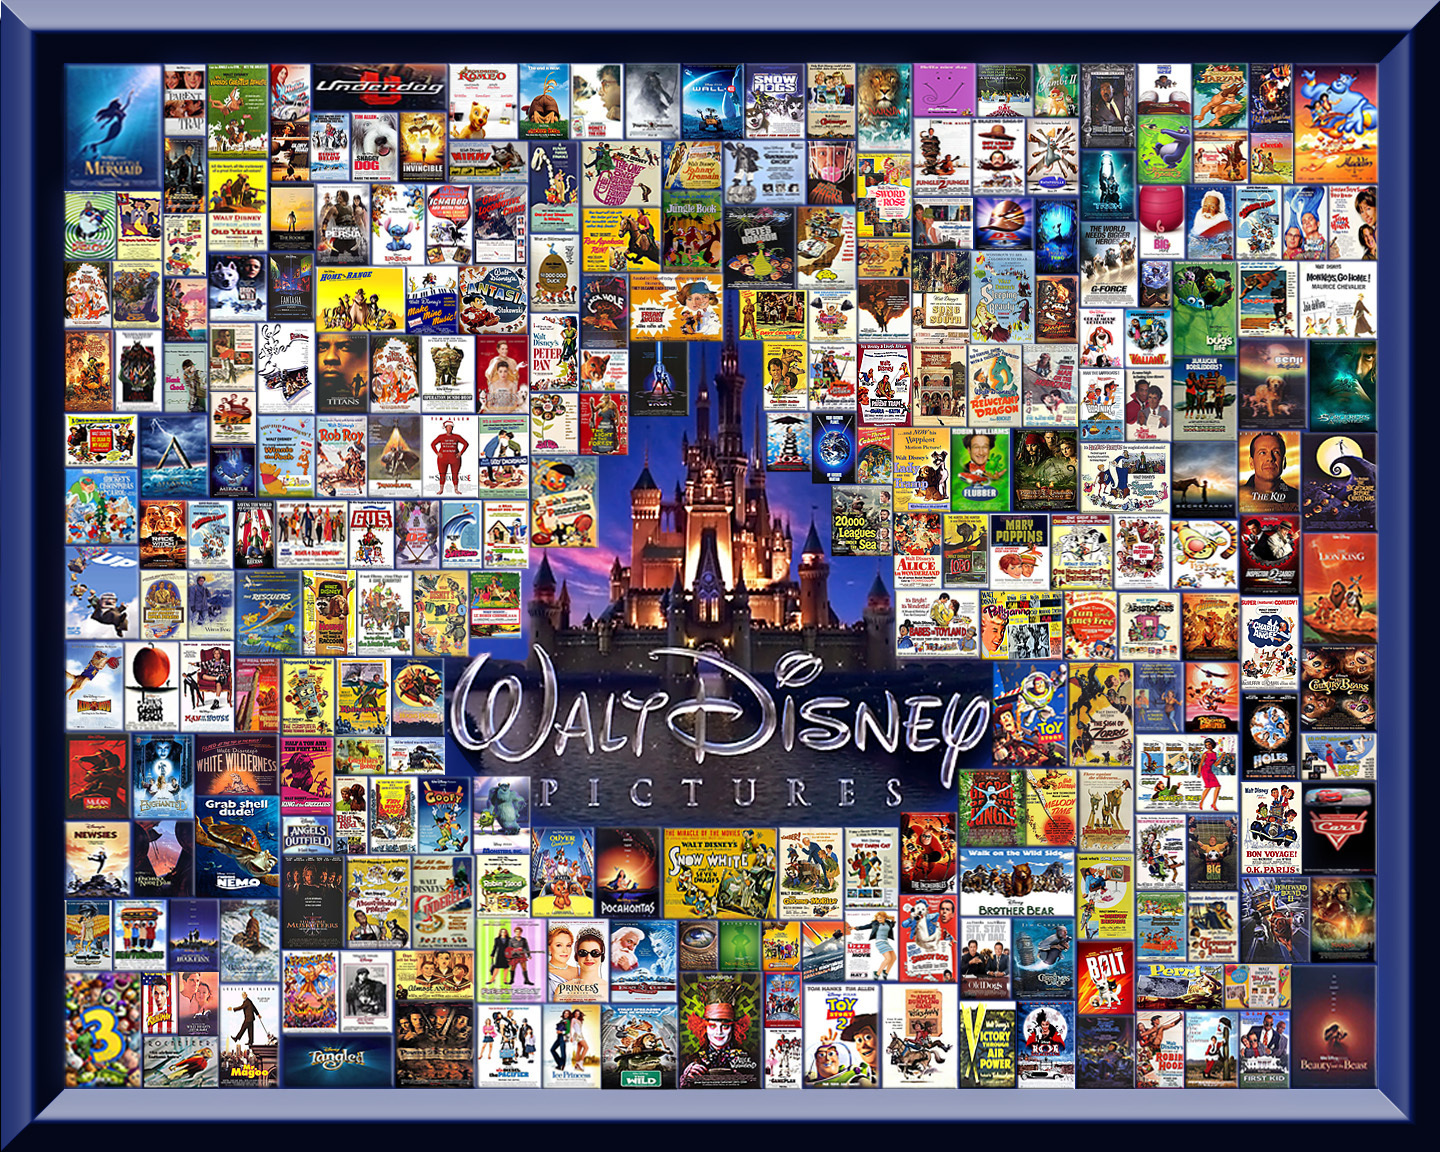 Disney Pixar Wallpaper HD Image Pictures Becuo